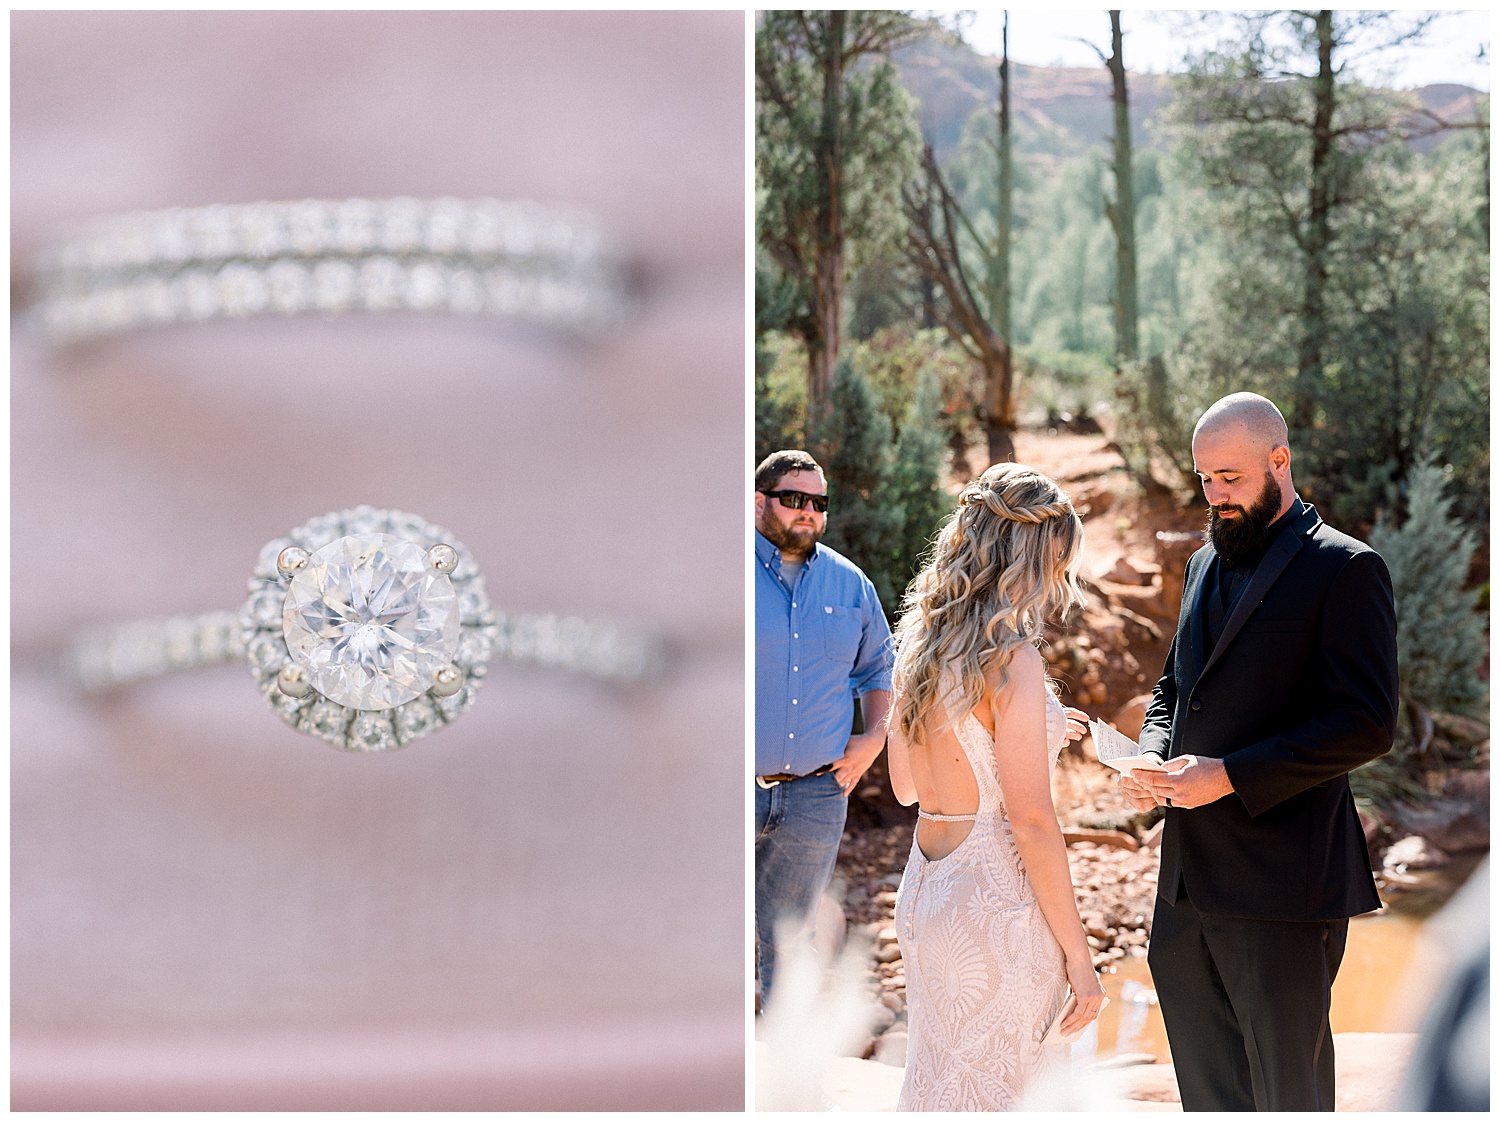 Saying vows at Sedona Arizona Elopement, ring detail